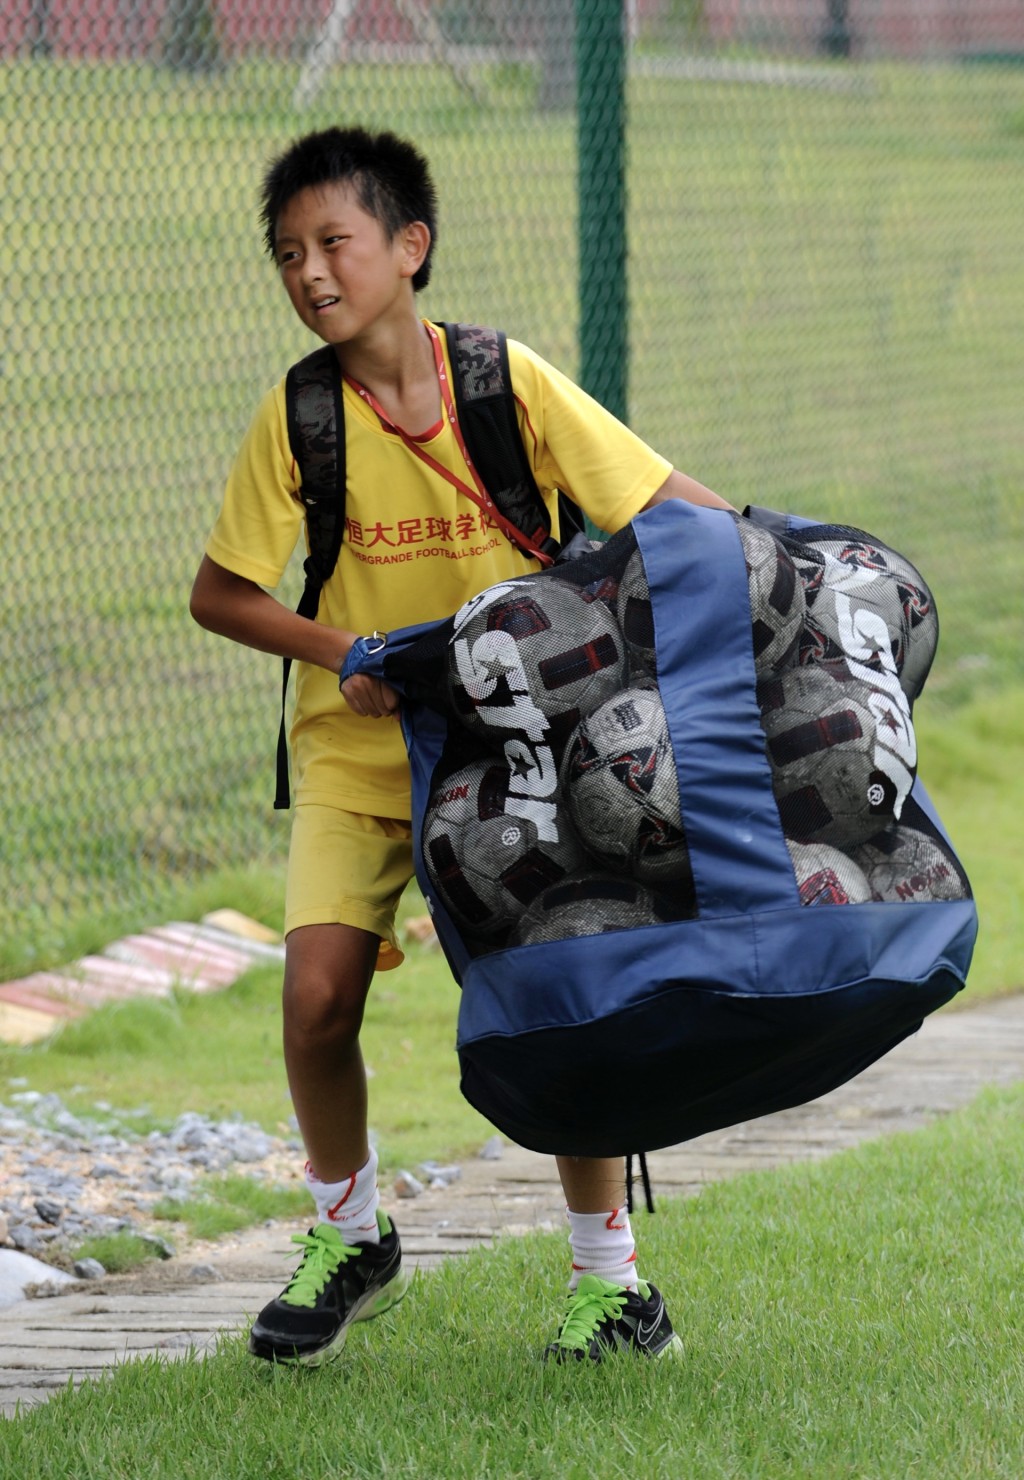 一名小球員在訓練結束後搬運一袋足球。 新華社資料圖